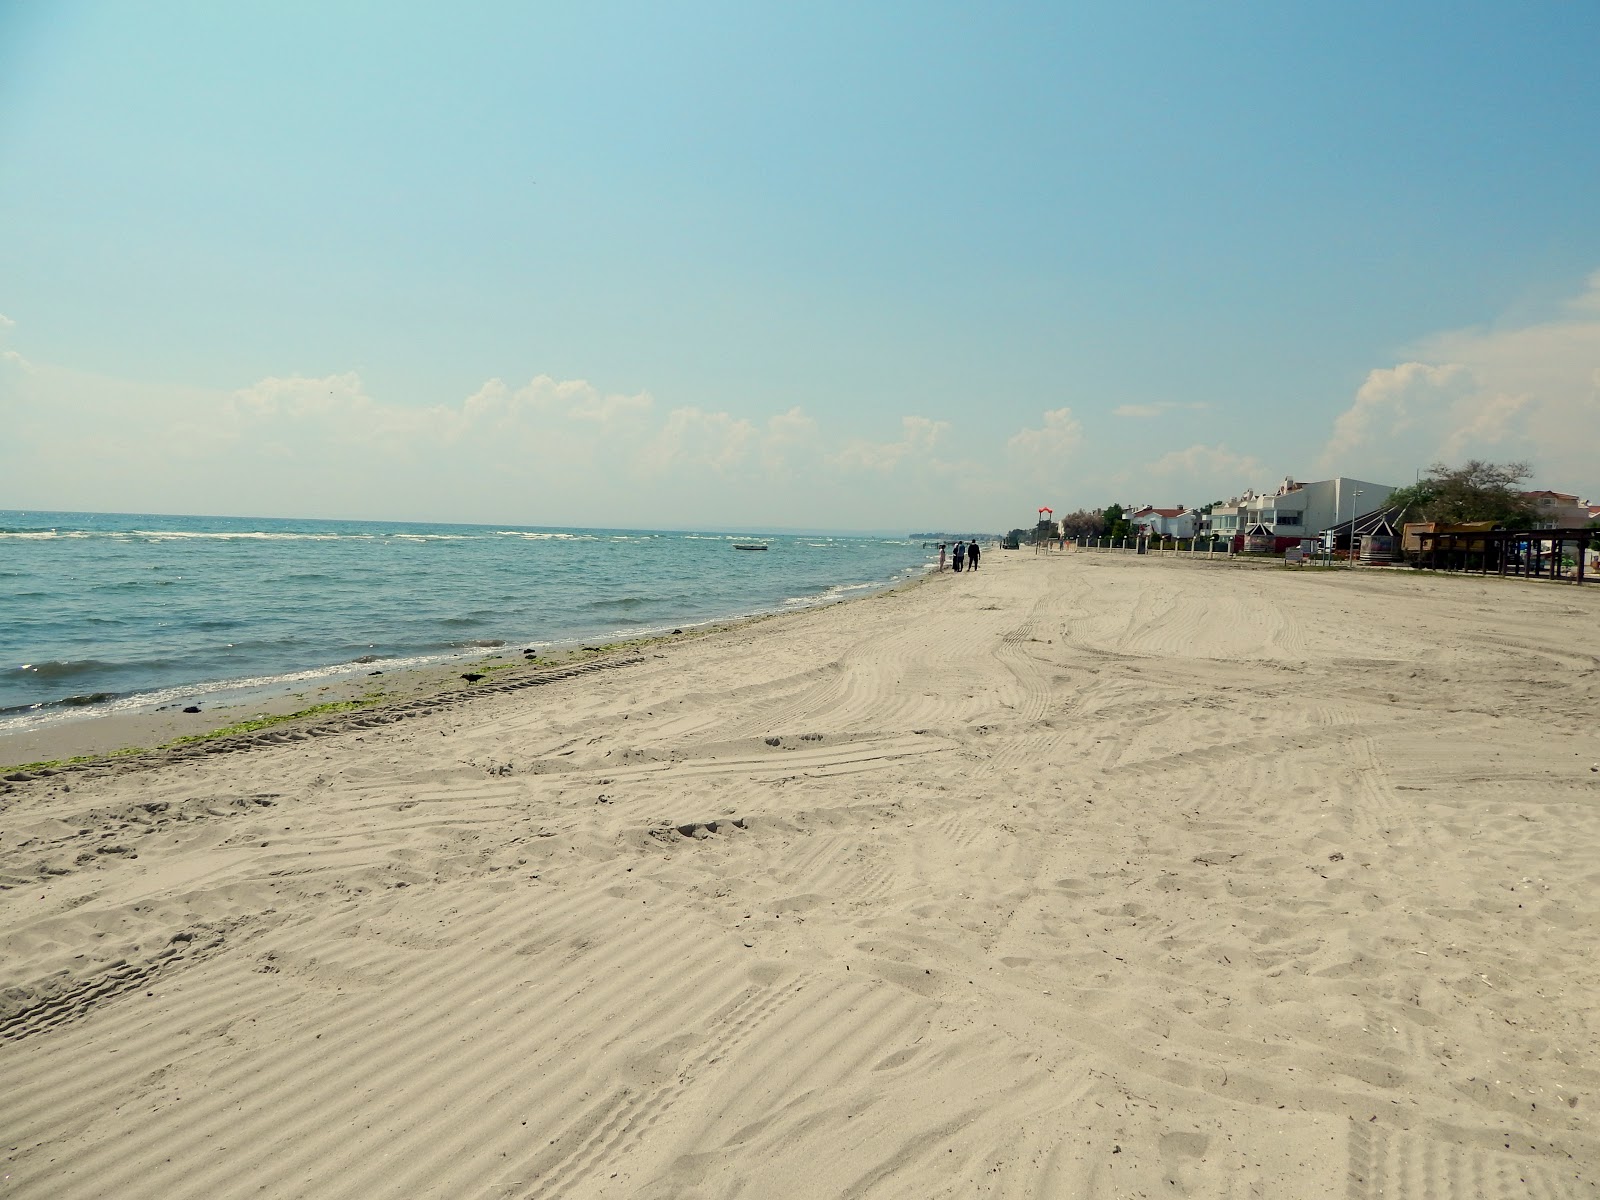 Fotografie cu Ataturk Parki beach zonă de stațiune de pe plajă